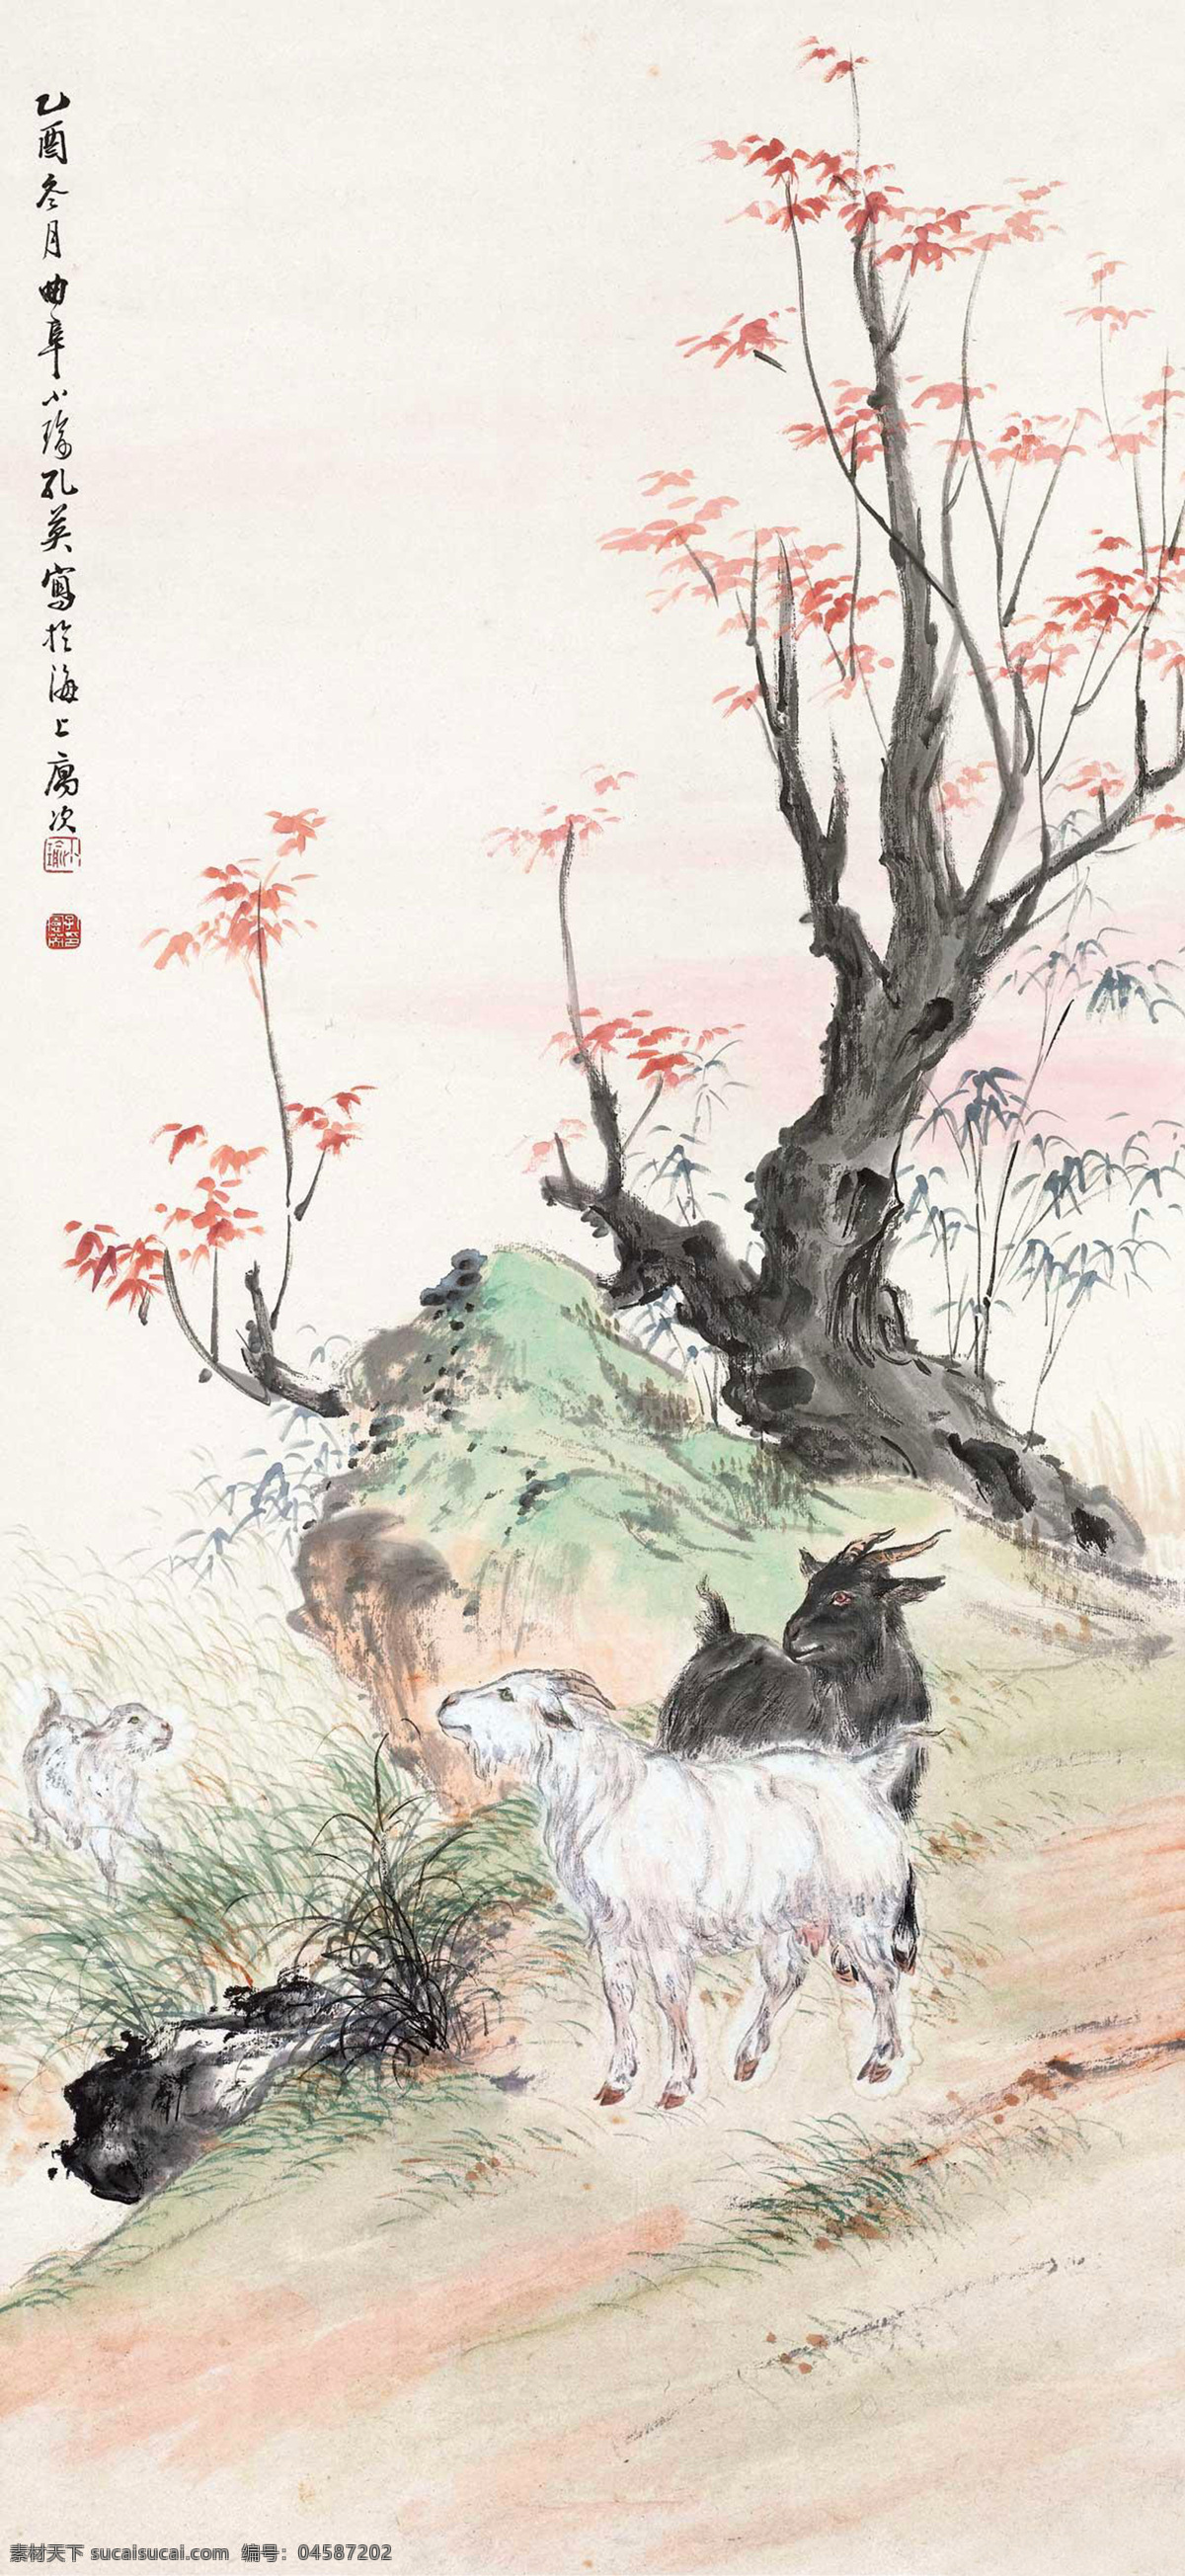 三羊开泰 孔小瑜 国画 羊 山羊 中国画 绘画书法 文化艺术